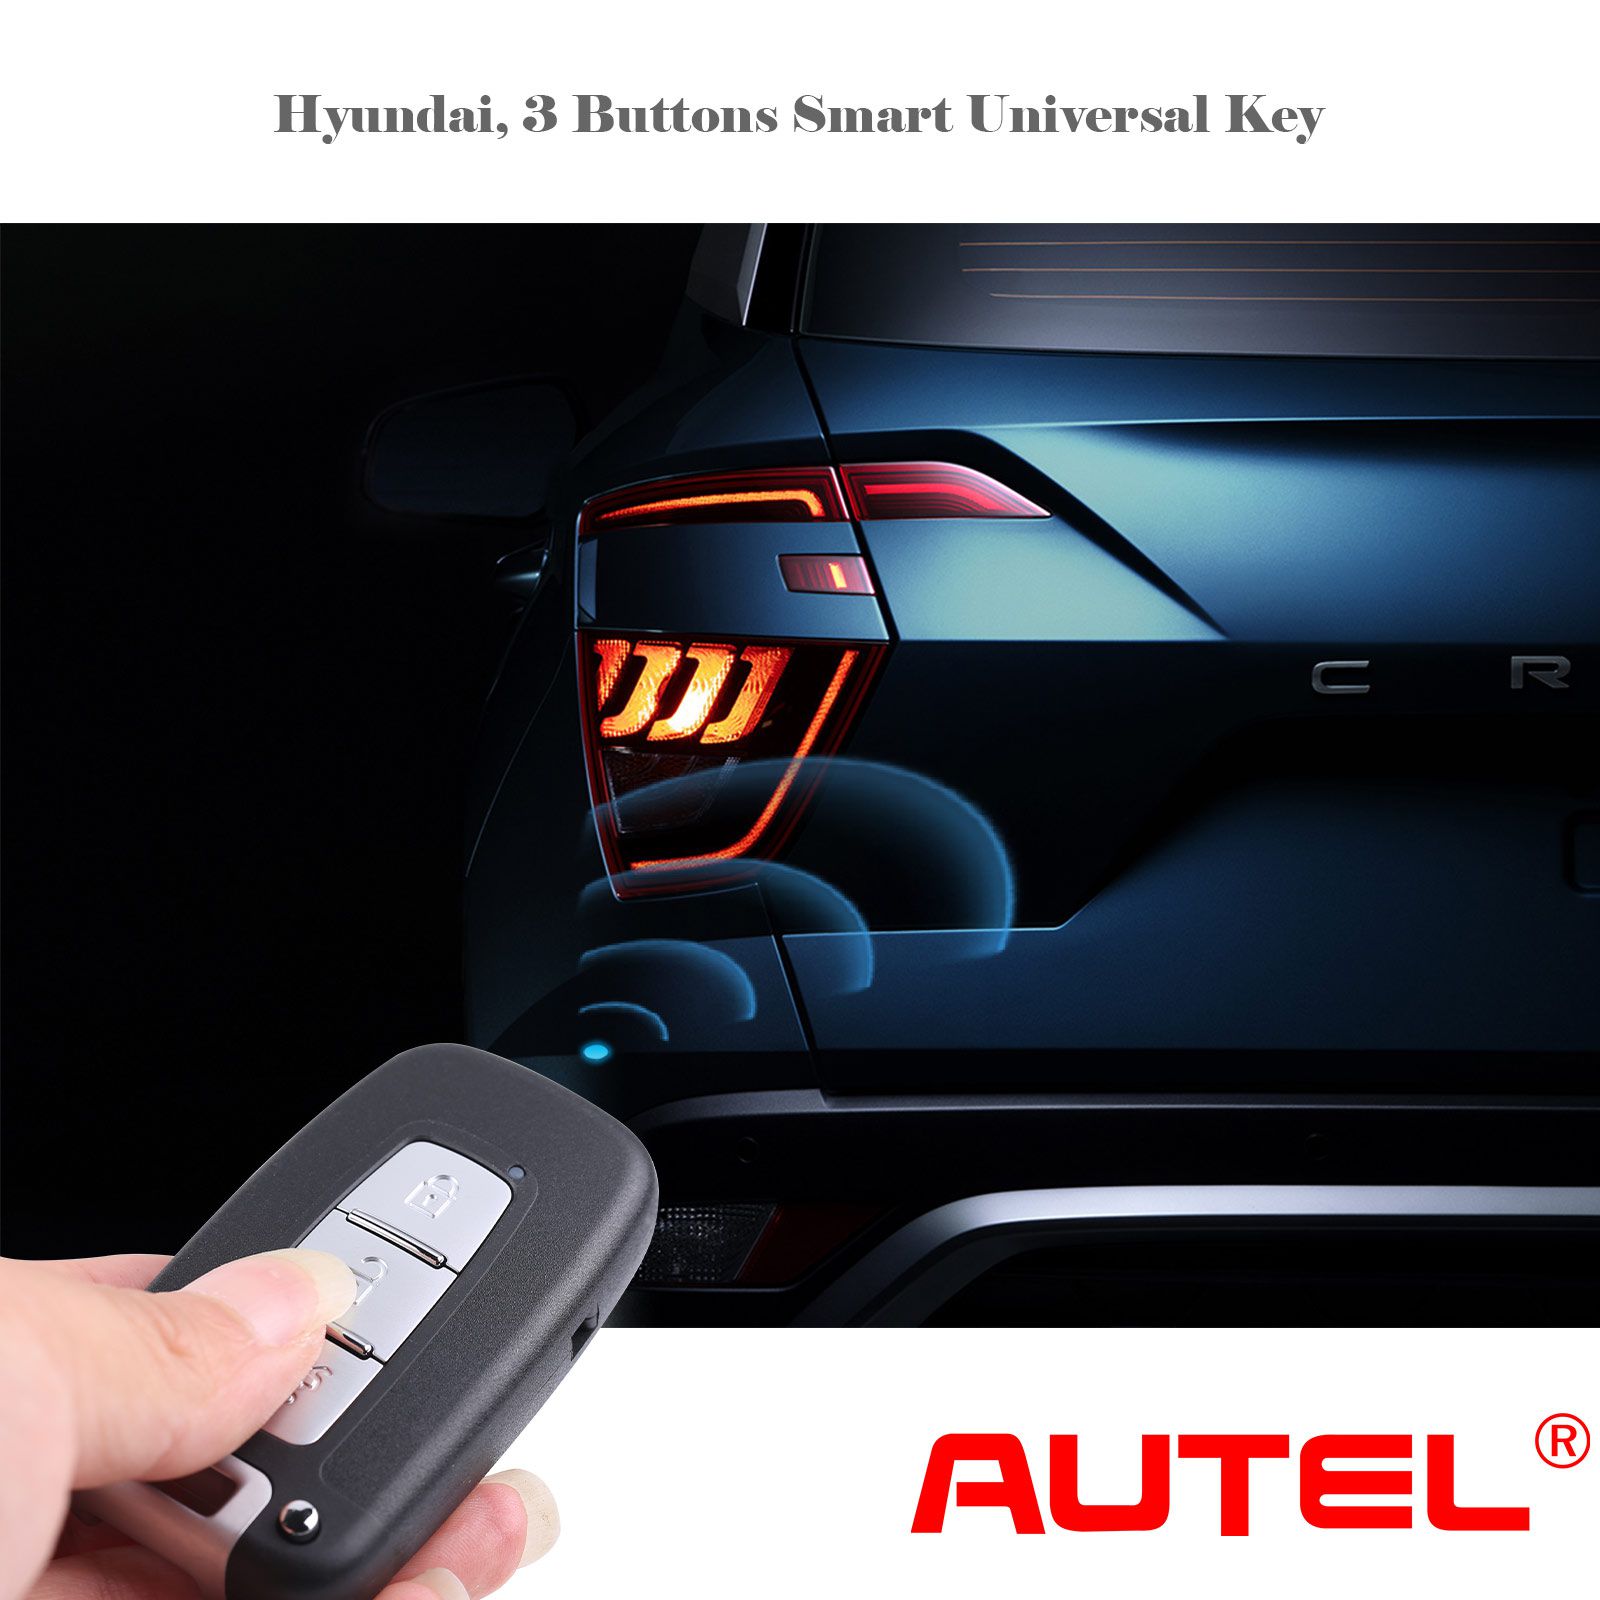  AUTEL IKEYHY003AL Hyundai 3 Buttons Universal Smart Key 5pcs/lot